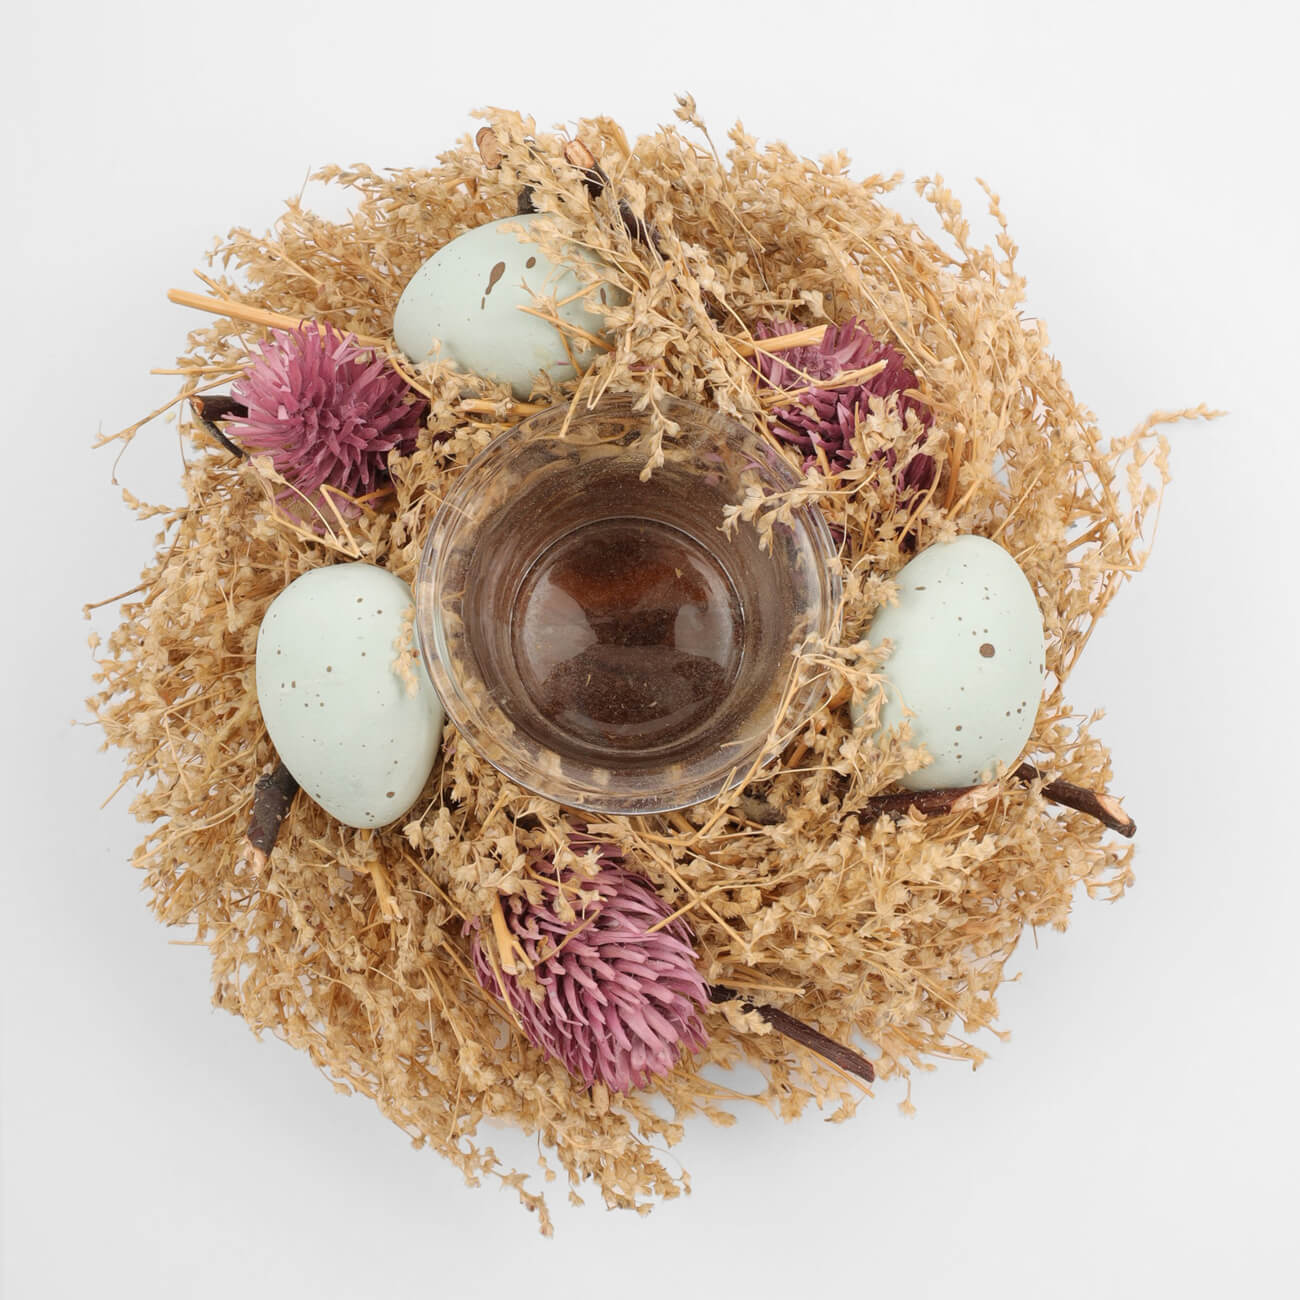 Подсвечник, 18 см, для чайной свечи, стекло/сухоцветы, Полевой венок, Natural Easter decor подставка для яйца 6 см на ножке стекло р перламутр кайма easter